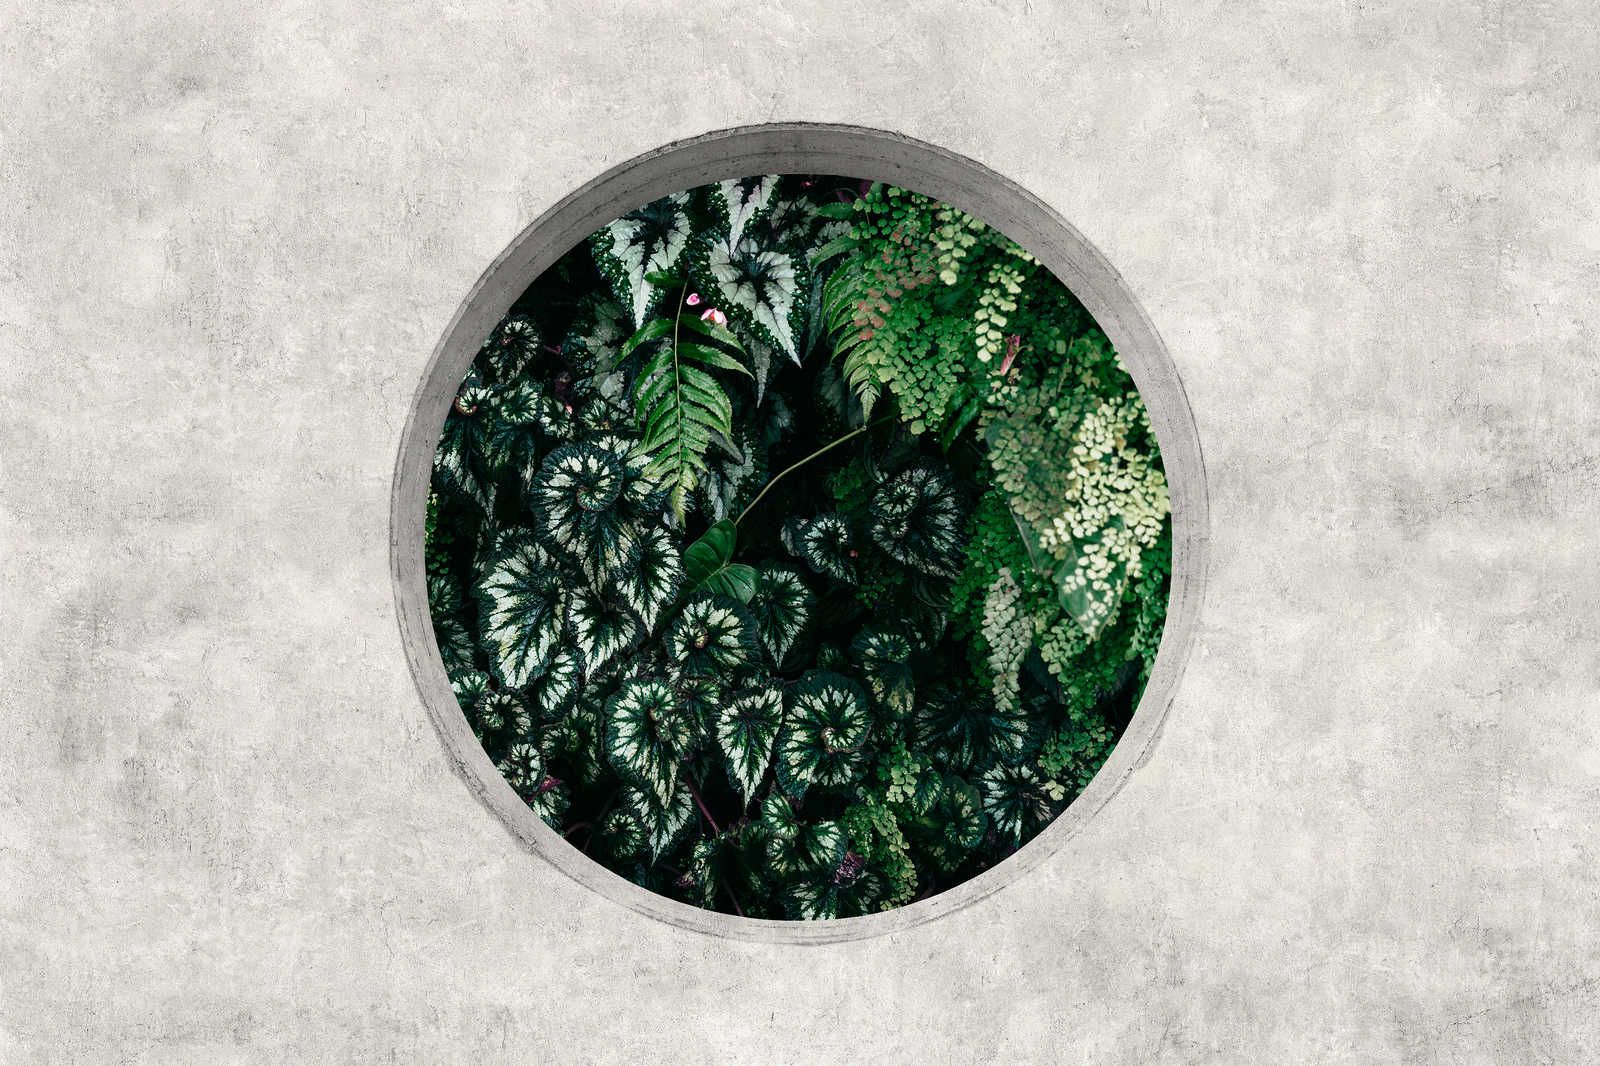             Deep Green 1 - Toile Fenêtre Ronde avec Plantes de la Jungle - 1,20 m x 0,80 m
        